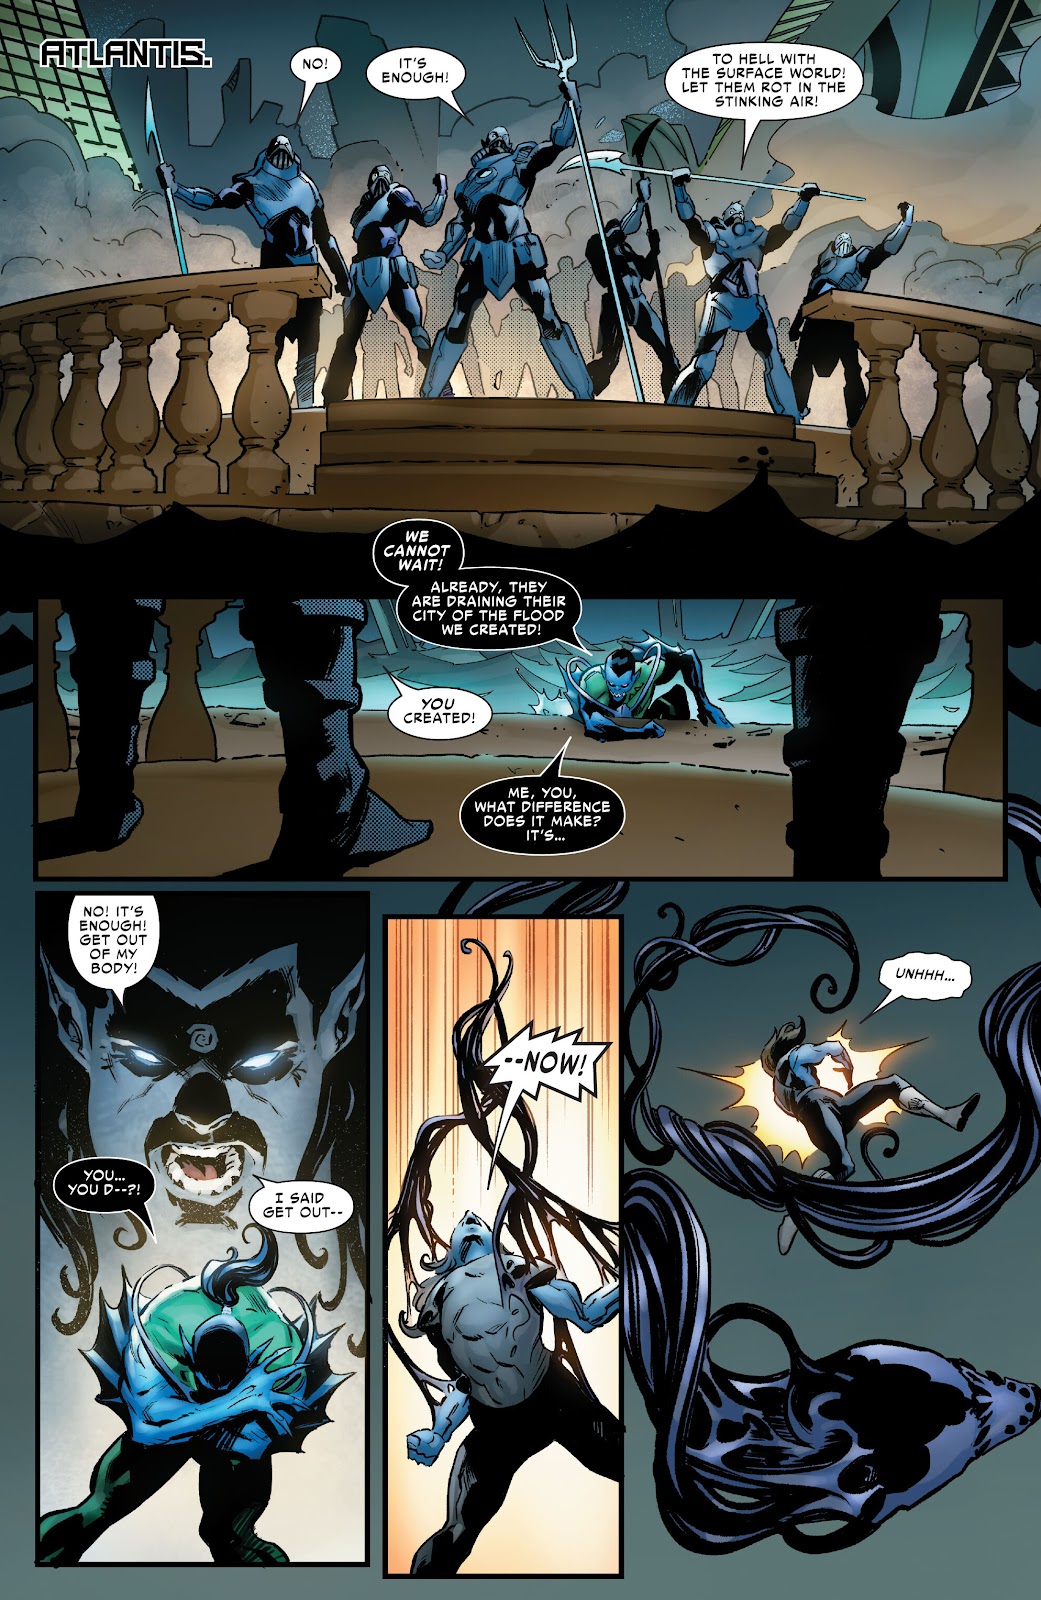 Symbiote Spider-Man 2099 issue 1 - Page 11